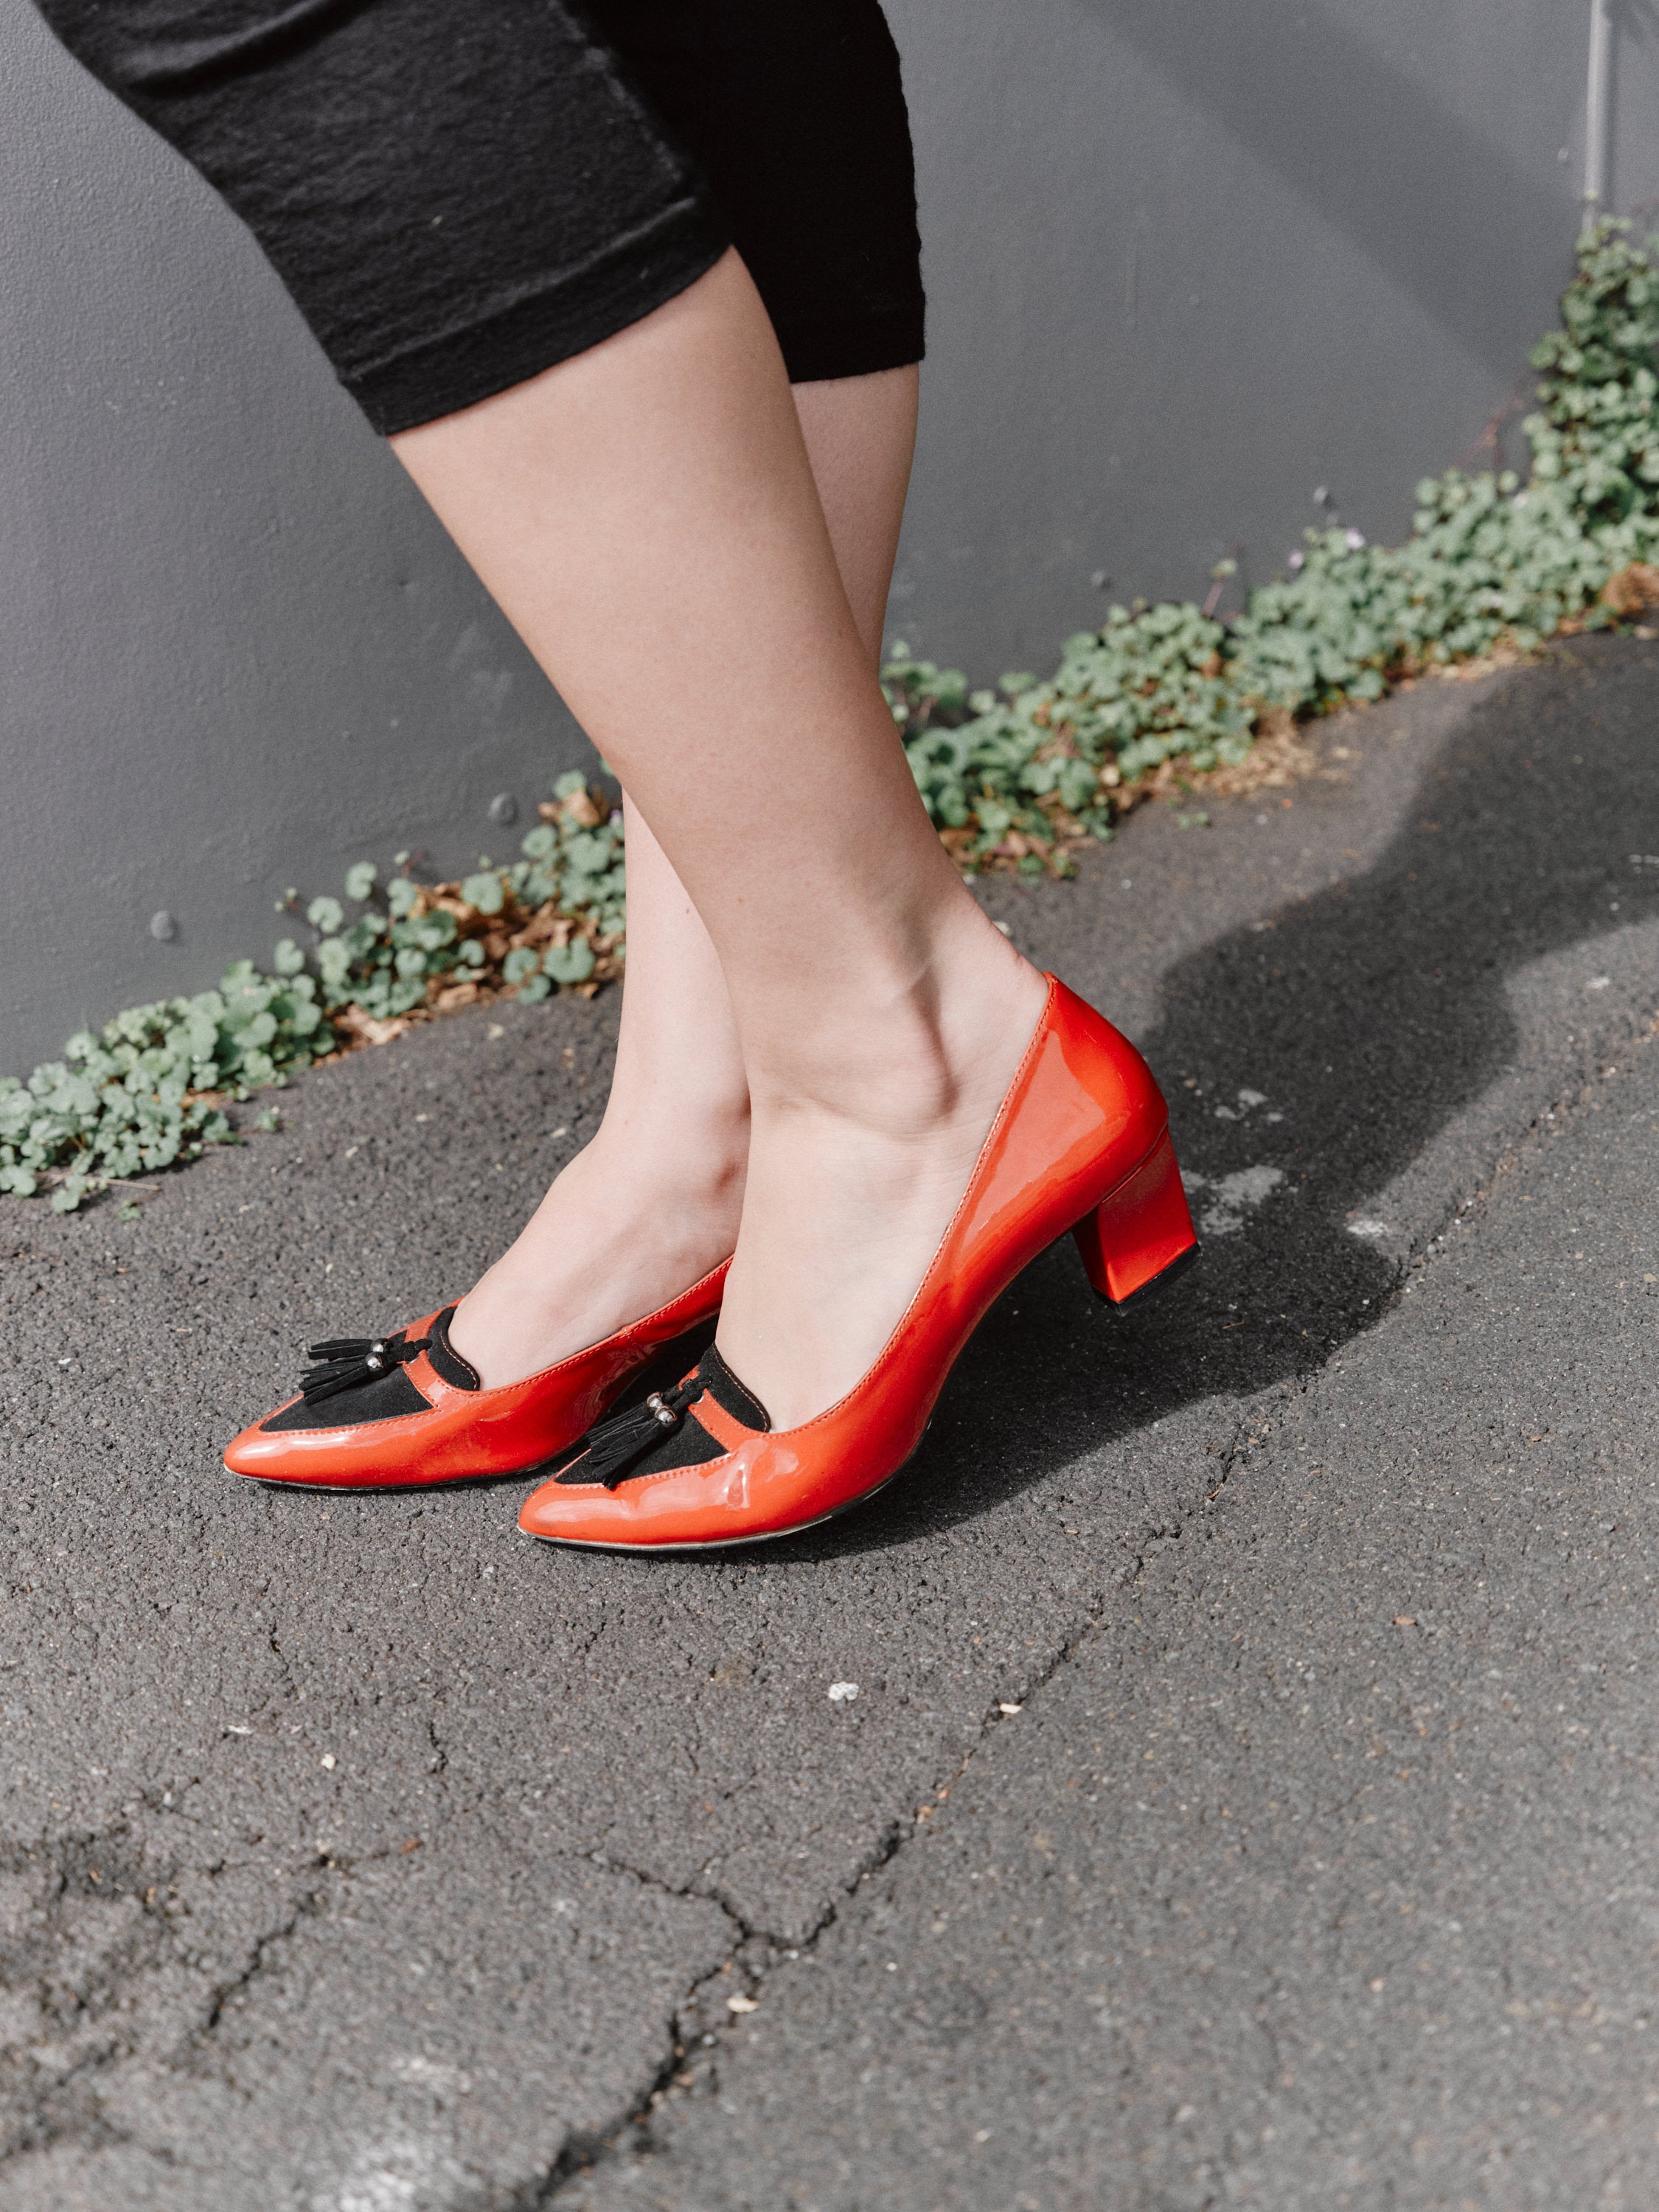 Florsheim red patient heels